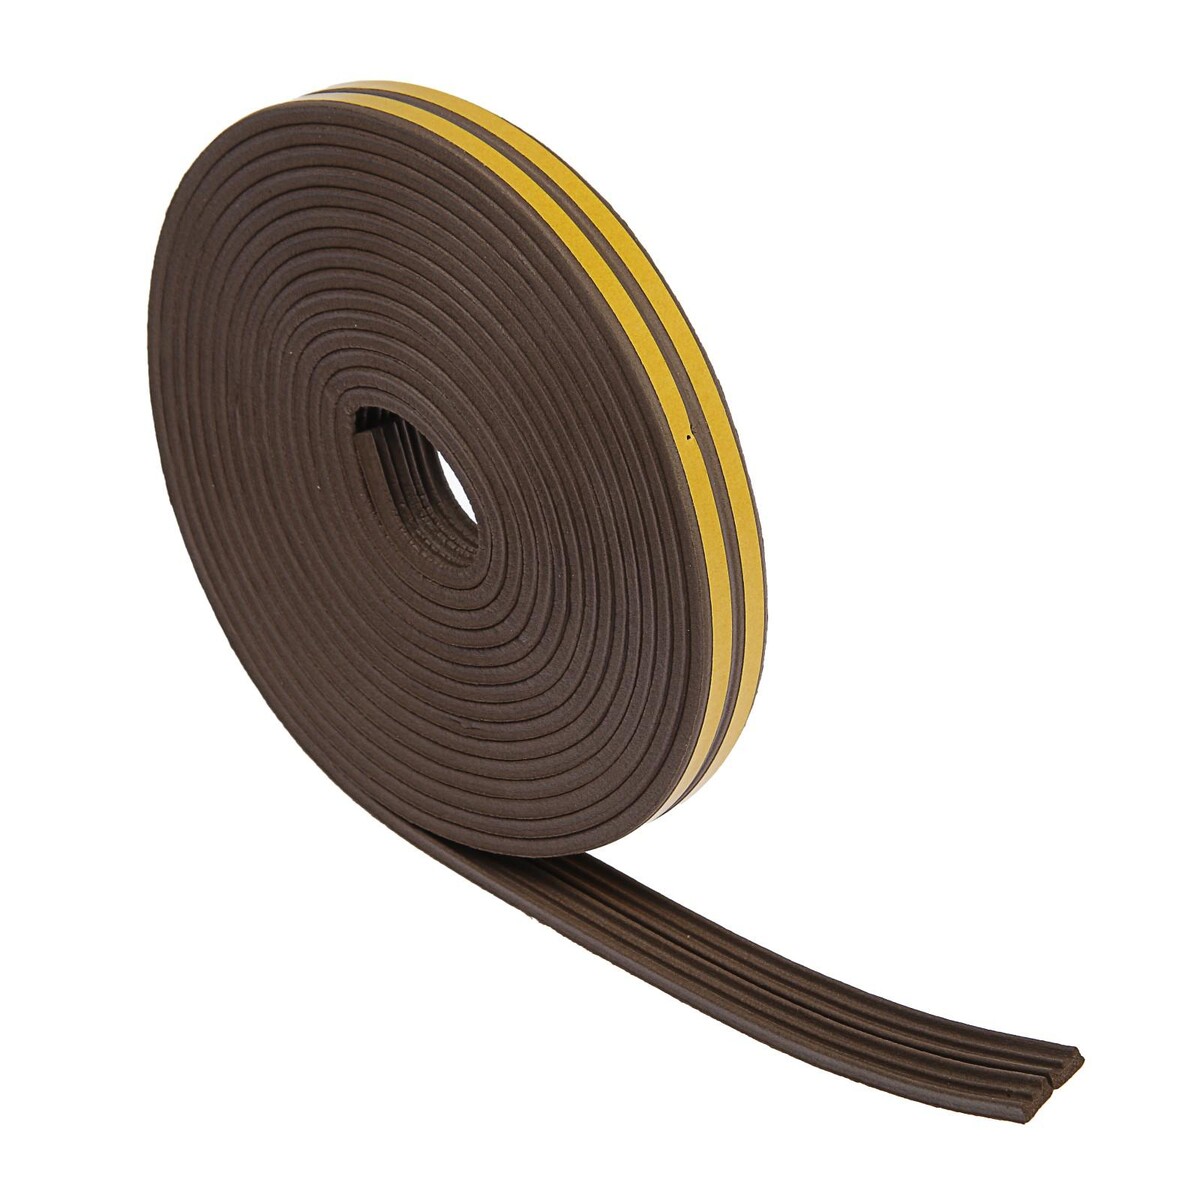 Уплотнитель резиновый тундра krep, профиль е, размер 4х9 мм, коричневый, в упаковке 10 м. медбол резиновый 2 кг bronze gym bg fa mb2